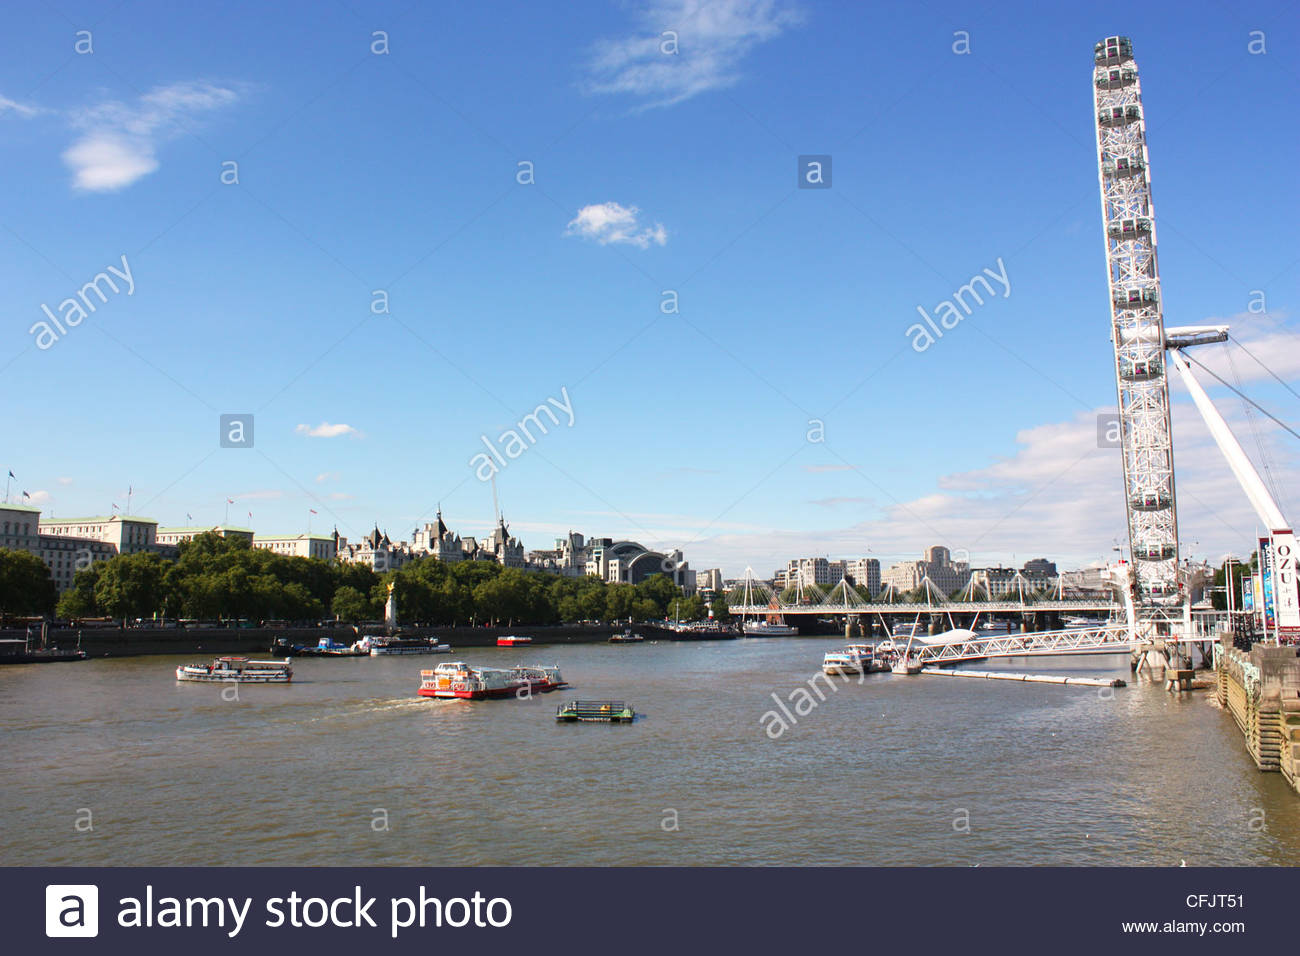 london-eye-over-river-thames-in-uk-cfjt51